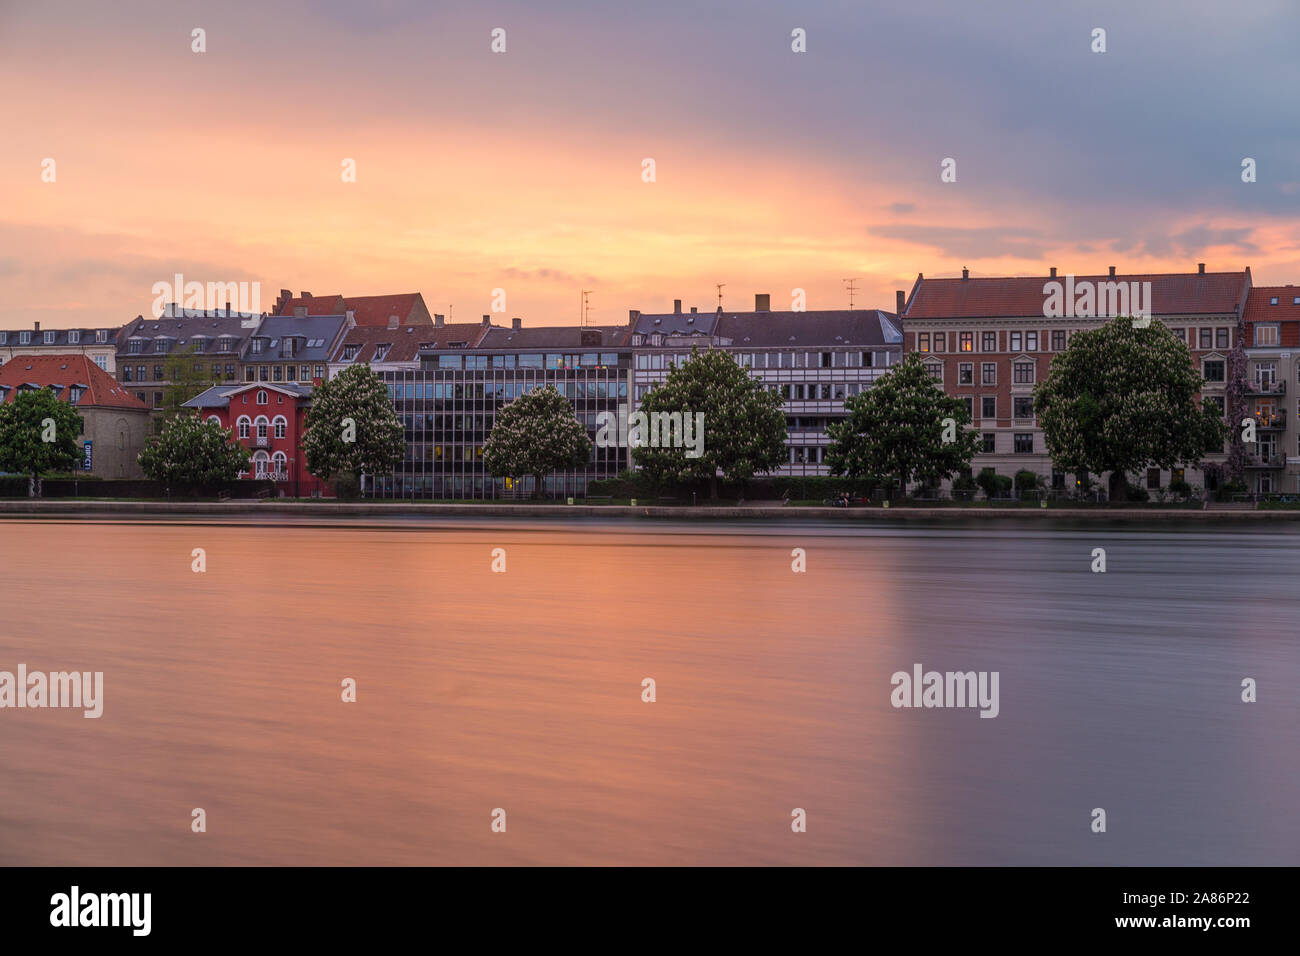 COPENHAGEN, Danimarca - 23 Maggio 2017: una vista lungo la Peblinge così il lago di Copenaghen al tramonto. Edifici e un cielo colorato può essere visto. Foto Stock